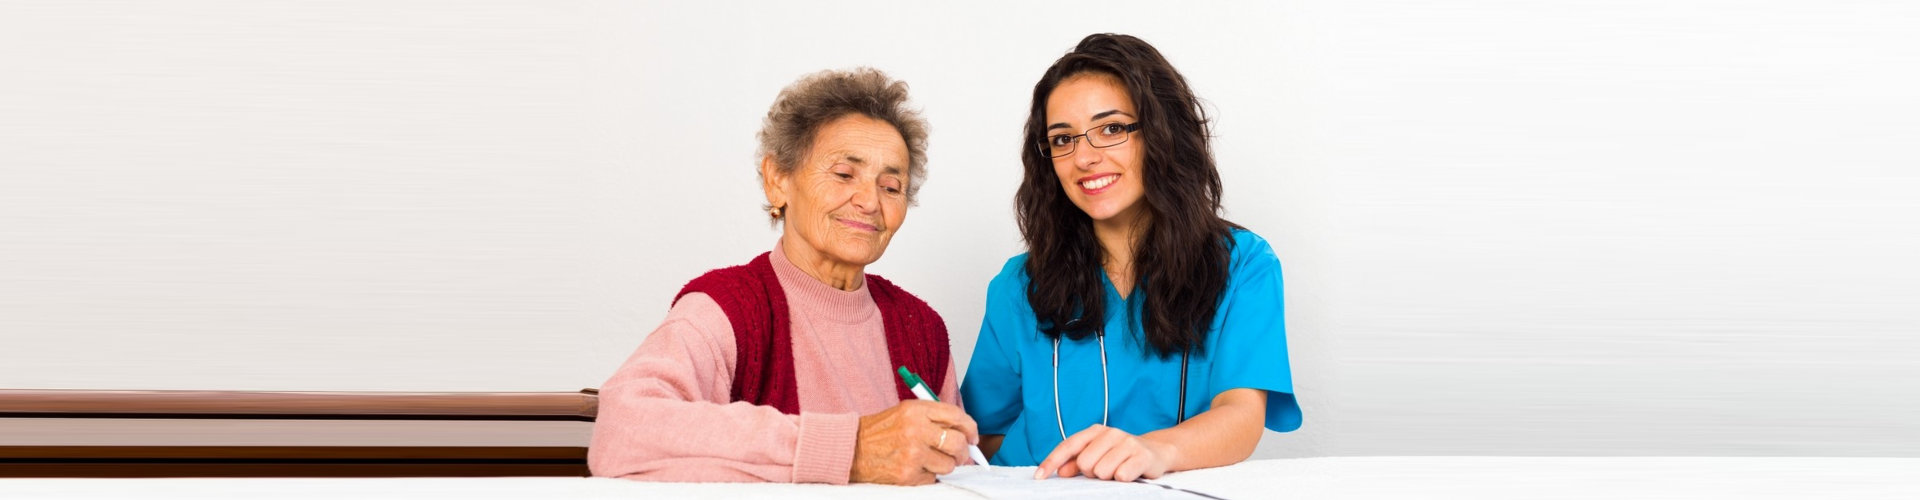 a caregiver woman interviewing an elderly woman